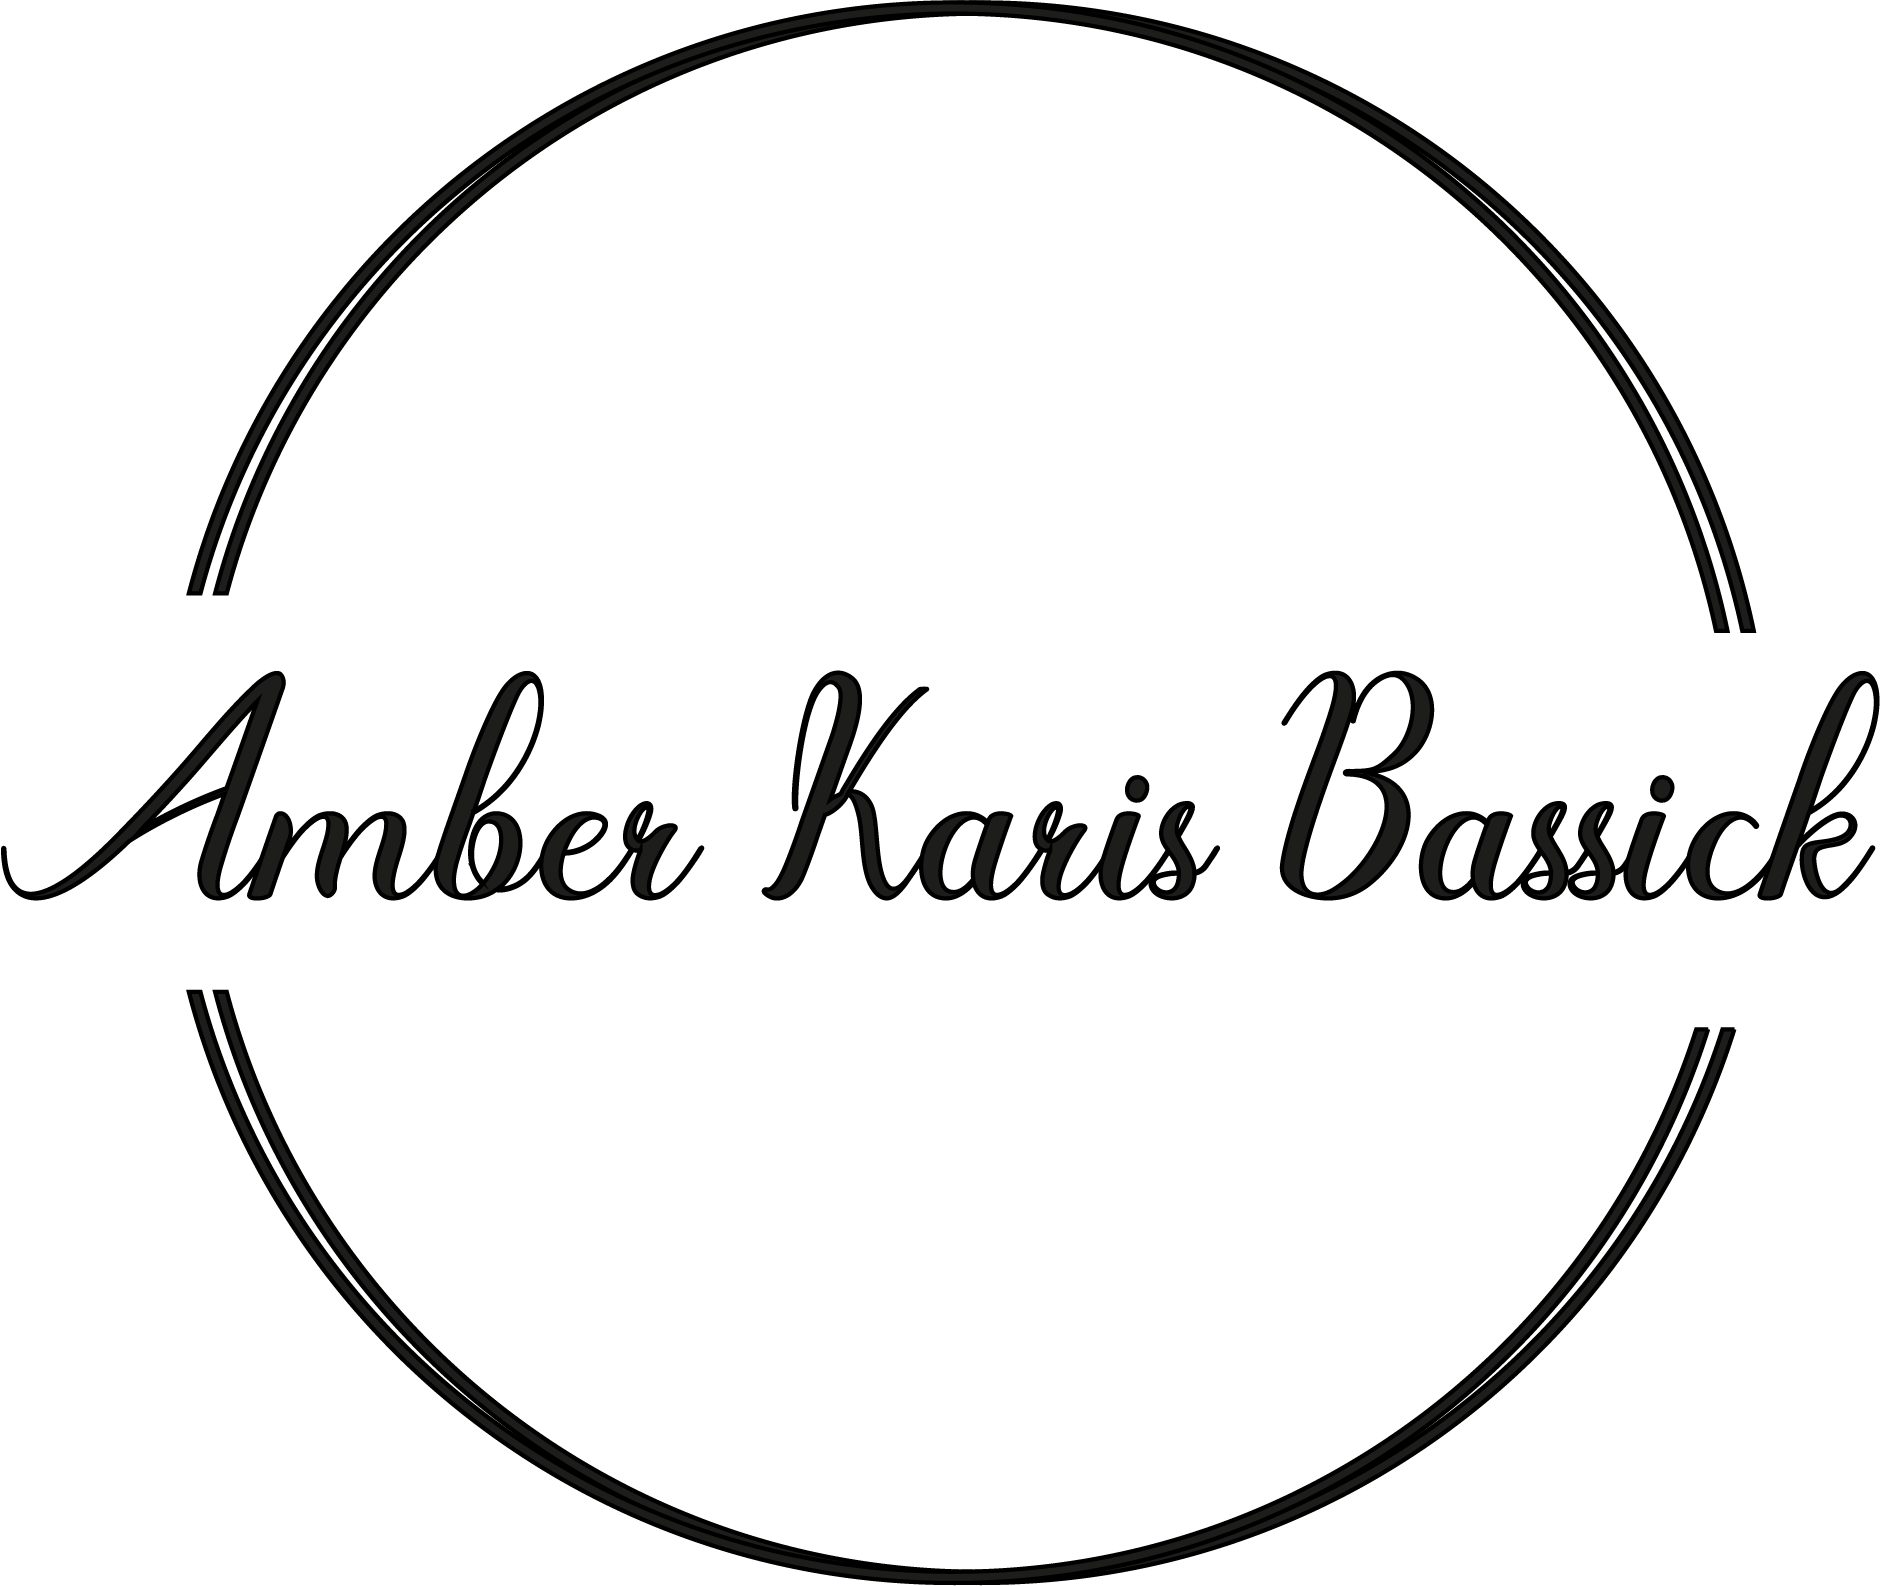 shop.amberkarisbassick.com